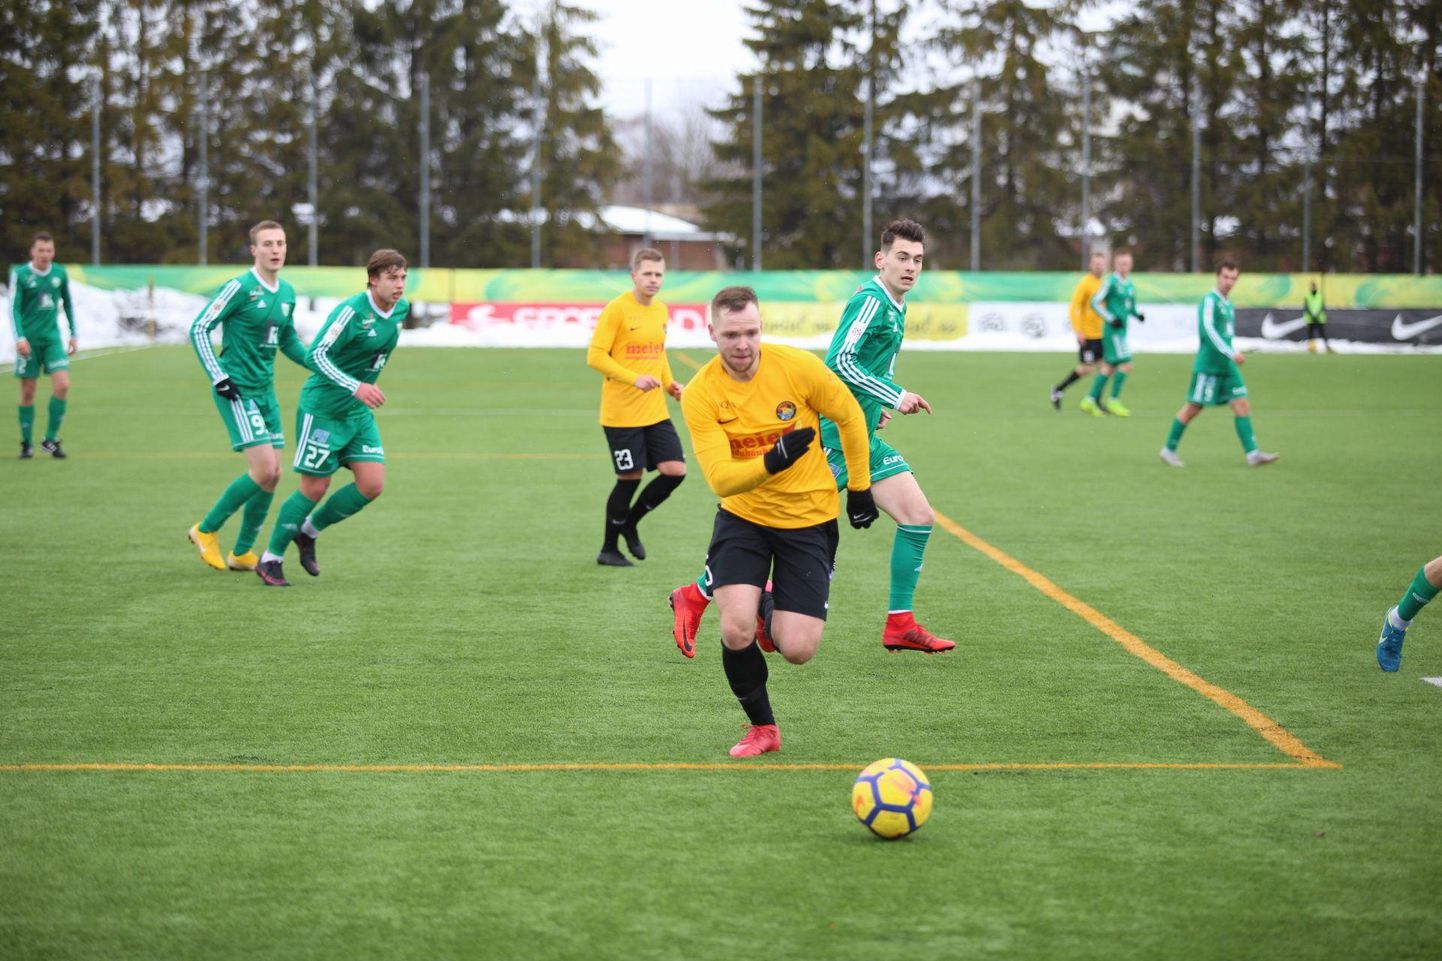 Tarva jalgpallurite järgmine esiliiga mõõduvõtt toimub tuleval neljapäeval kodusel kunstmurustaadionil JK Tallinna Kalev U21 meeskonna vastu.